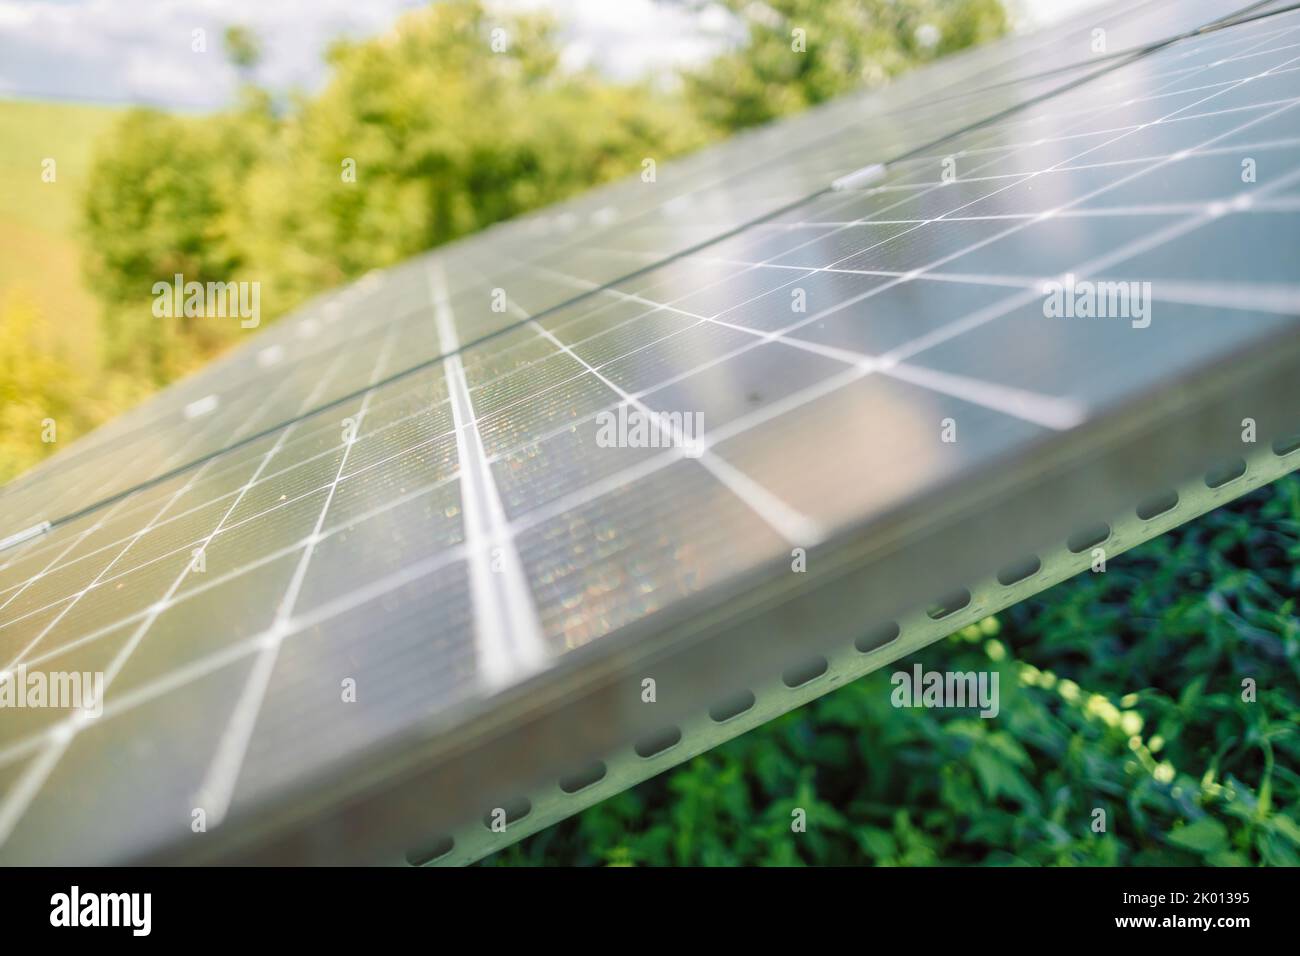 Primo piano sulla mano femminile toccare stroking pannelli solari fotovoltaici nelle giornate di sole, energia pulita rinnovabile concetto Foto Stock